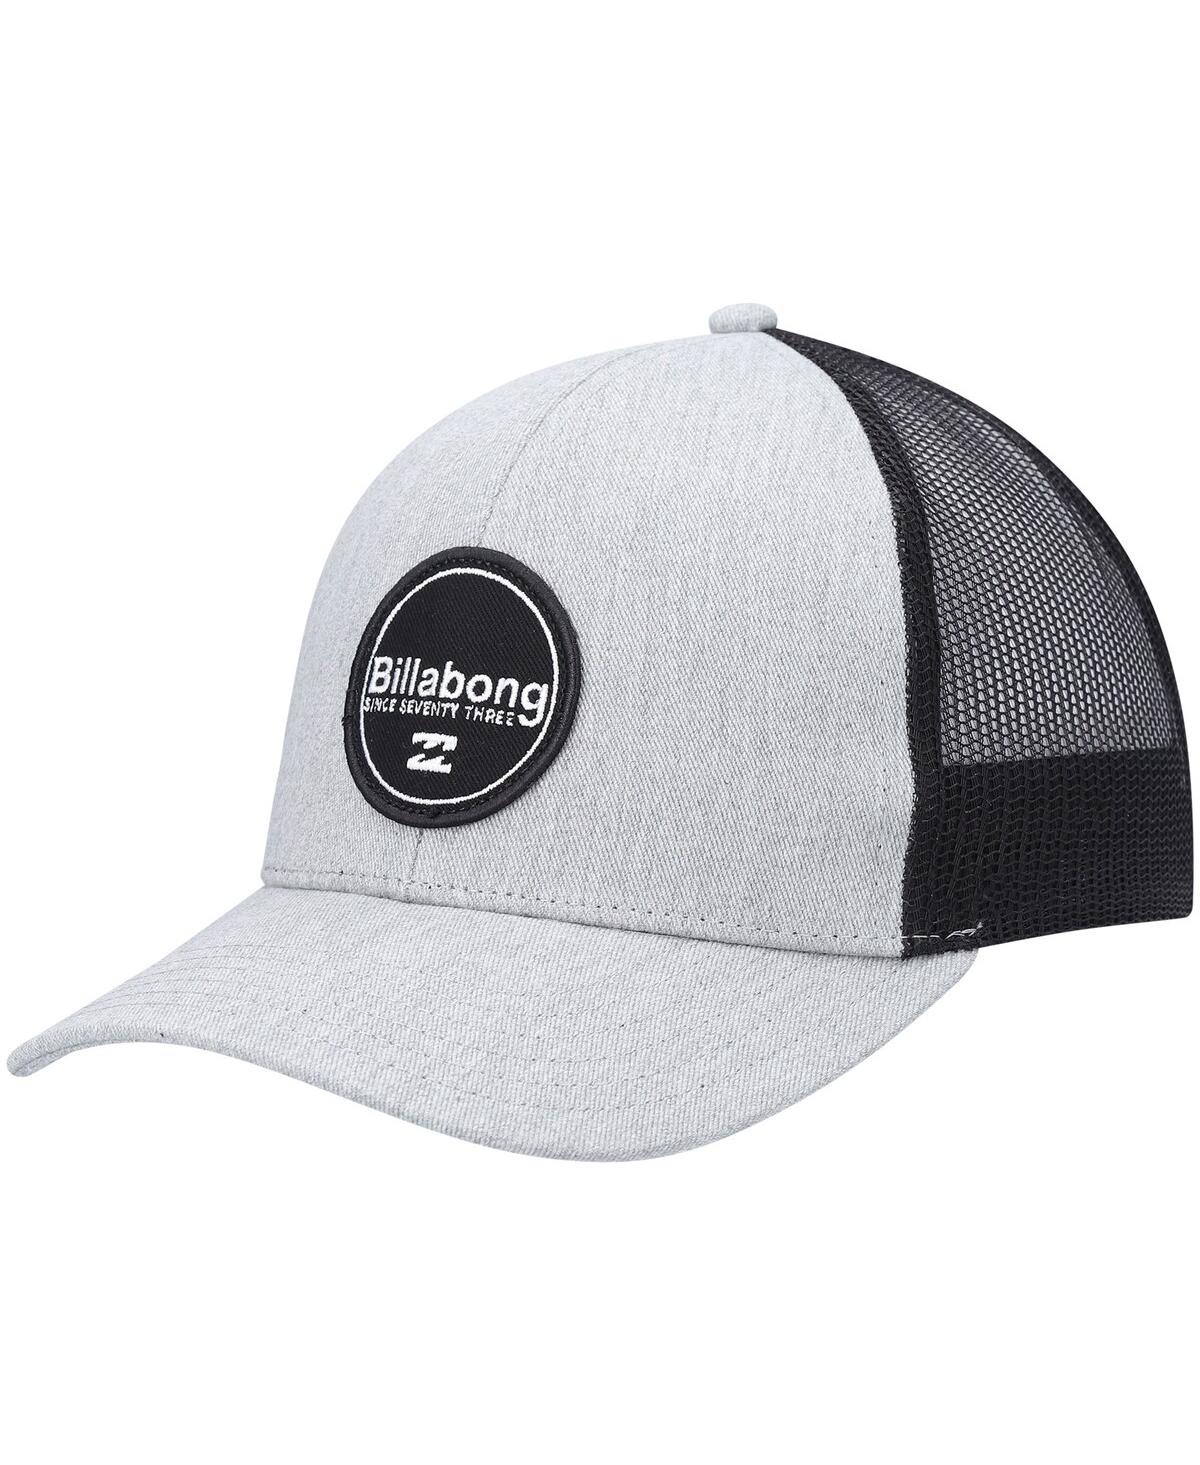 Men's Billabong Gray, Black Walled Trucker Snapback Hat - Gray, Black